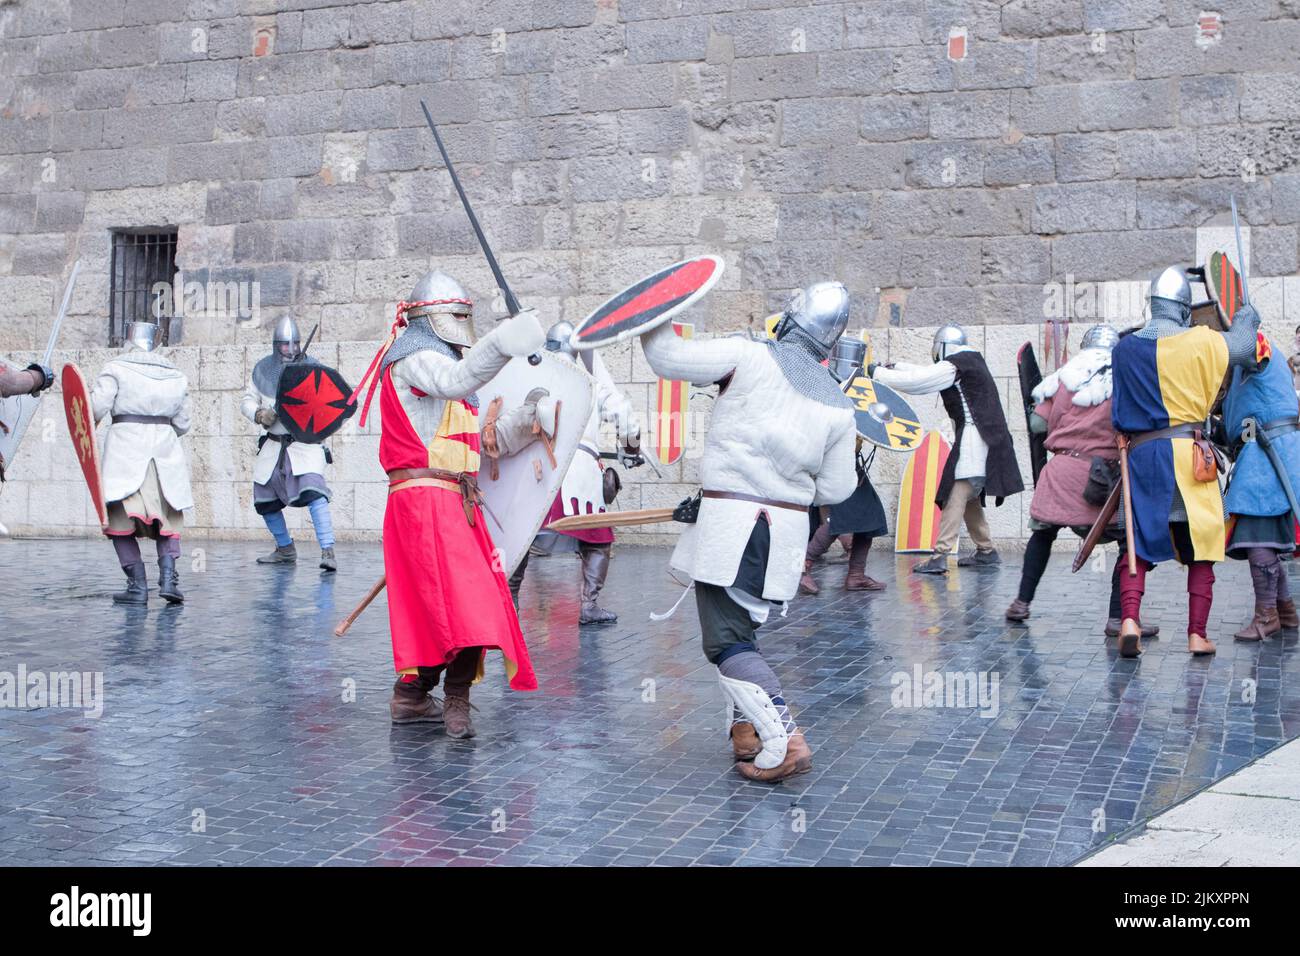 Combate medieval en una representacion Stock Photo